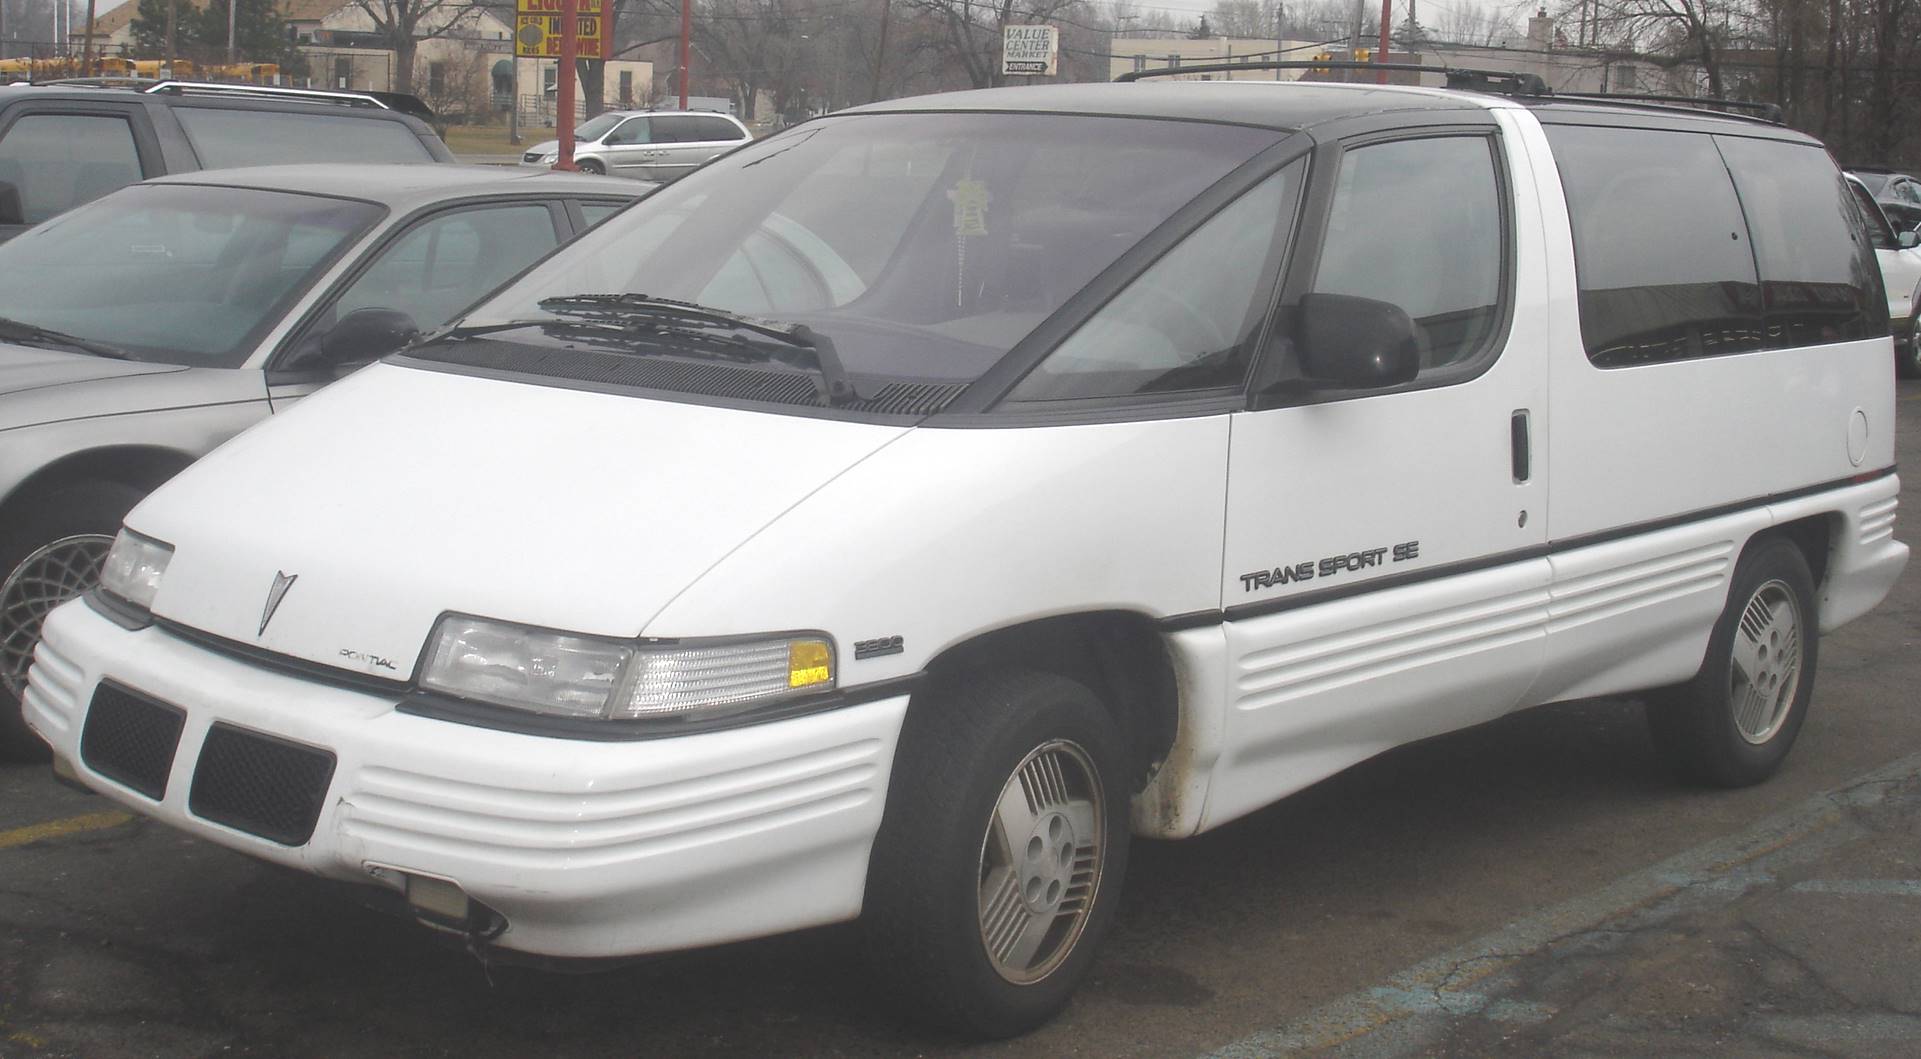 1991 Pontiac Trans Sport SE - Passenger Minivan 3.1L V6 auto